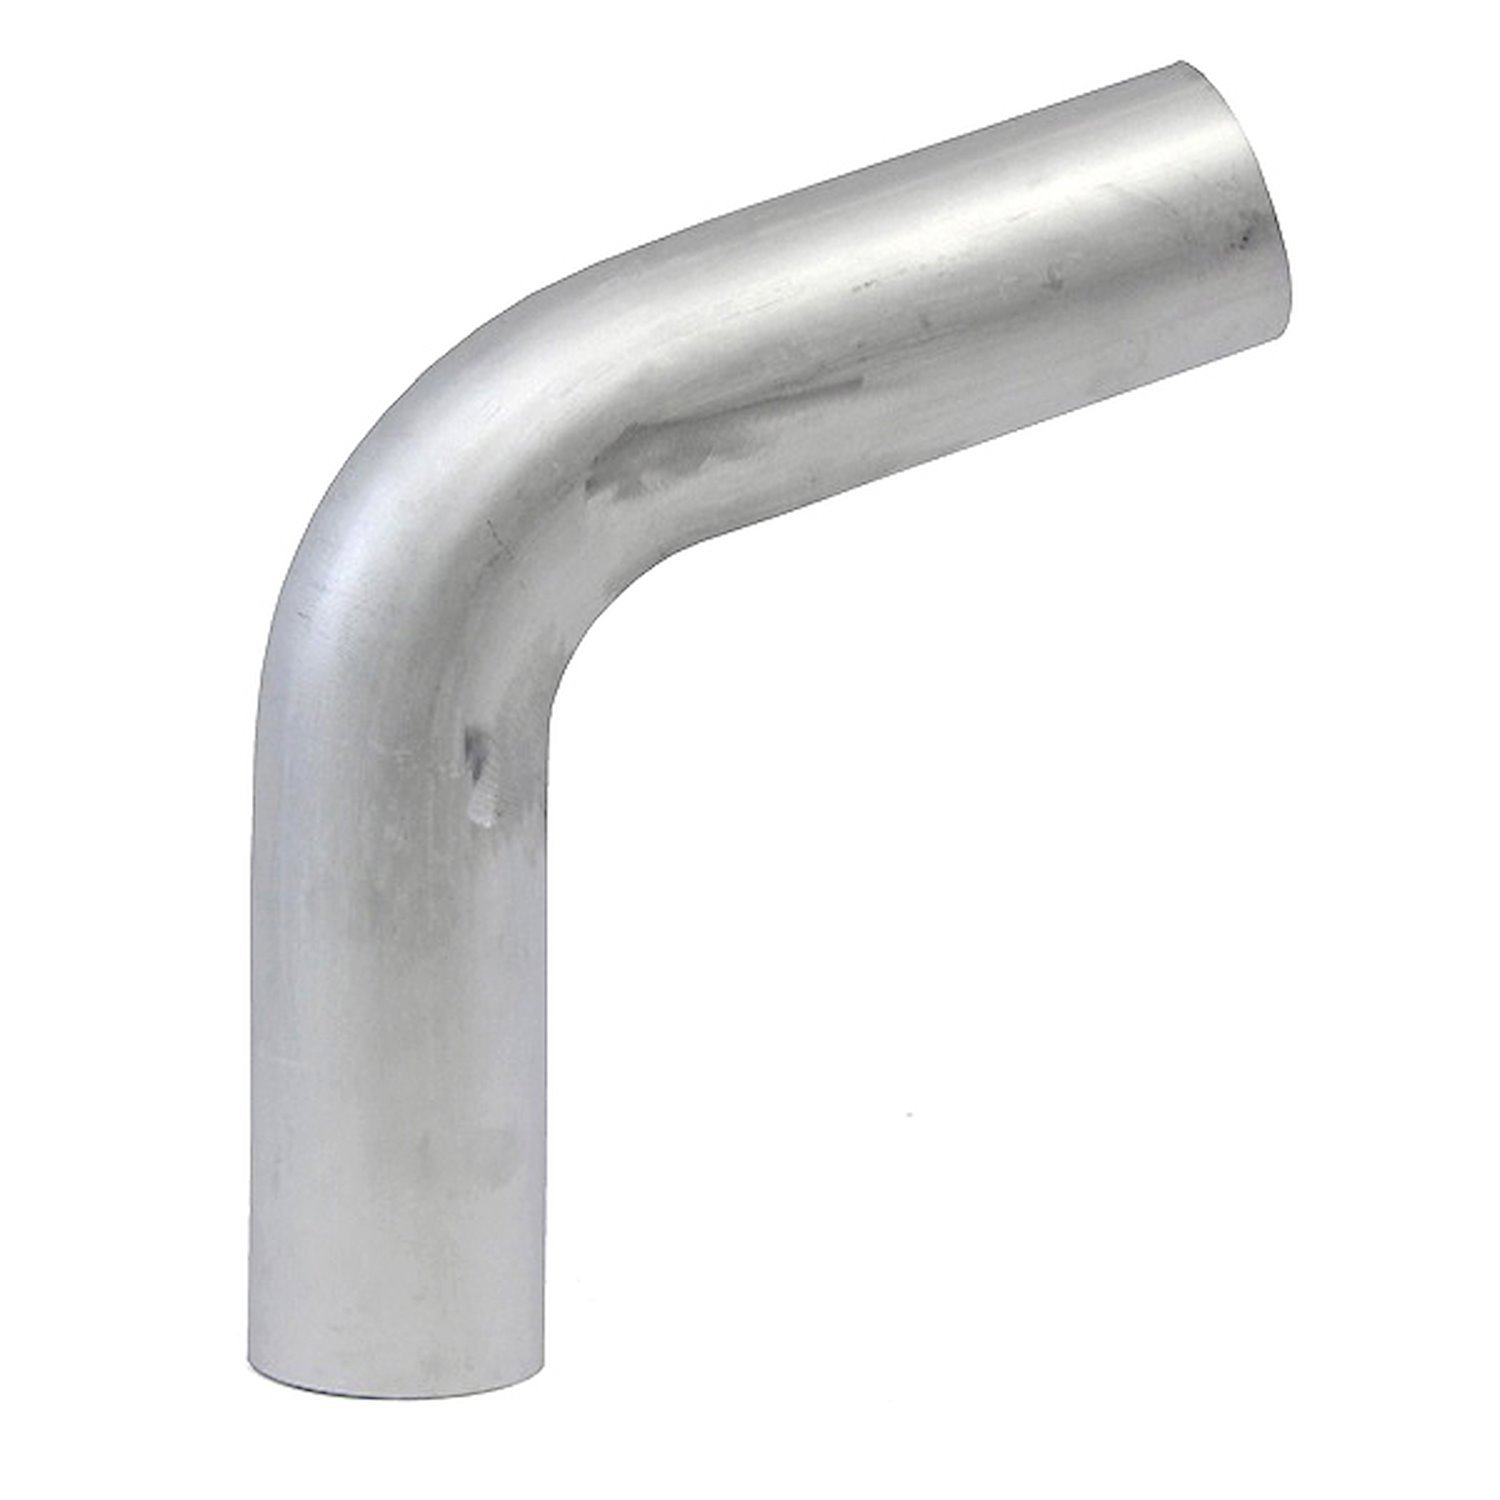 AT70-350-CLR-35 Aluminum Elbow Tube, 6061 Aluminum, 70-Degree Bend Elbow Tubing, 3-1/2 in. OD, Tight Radius, 3-1/2 in. CLR